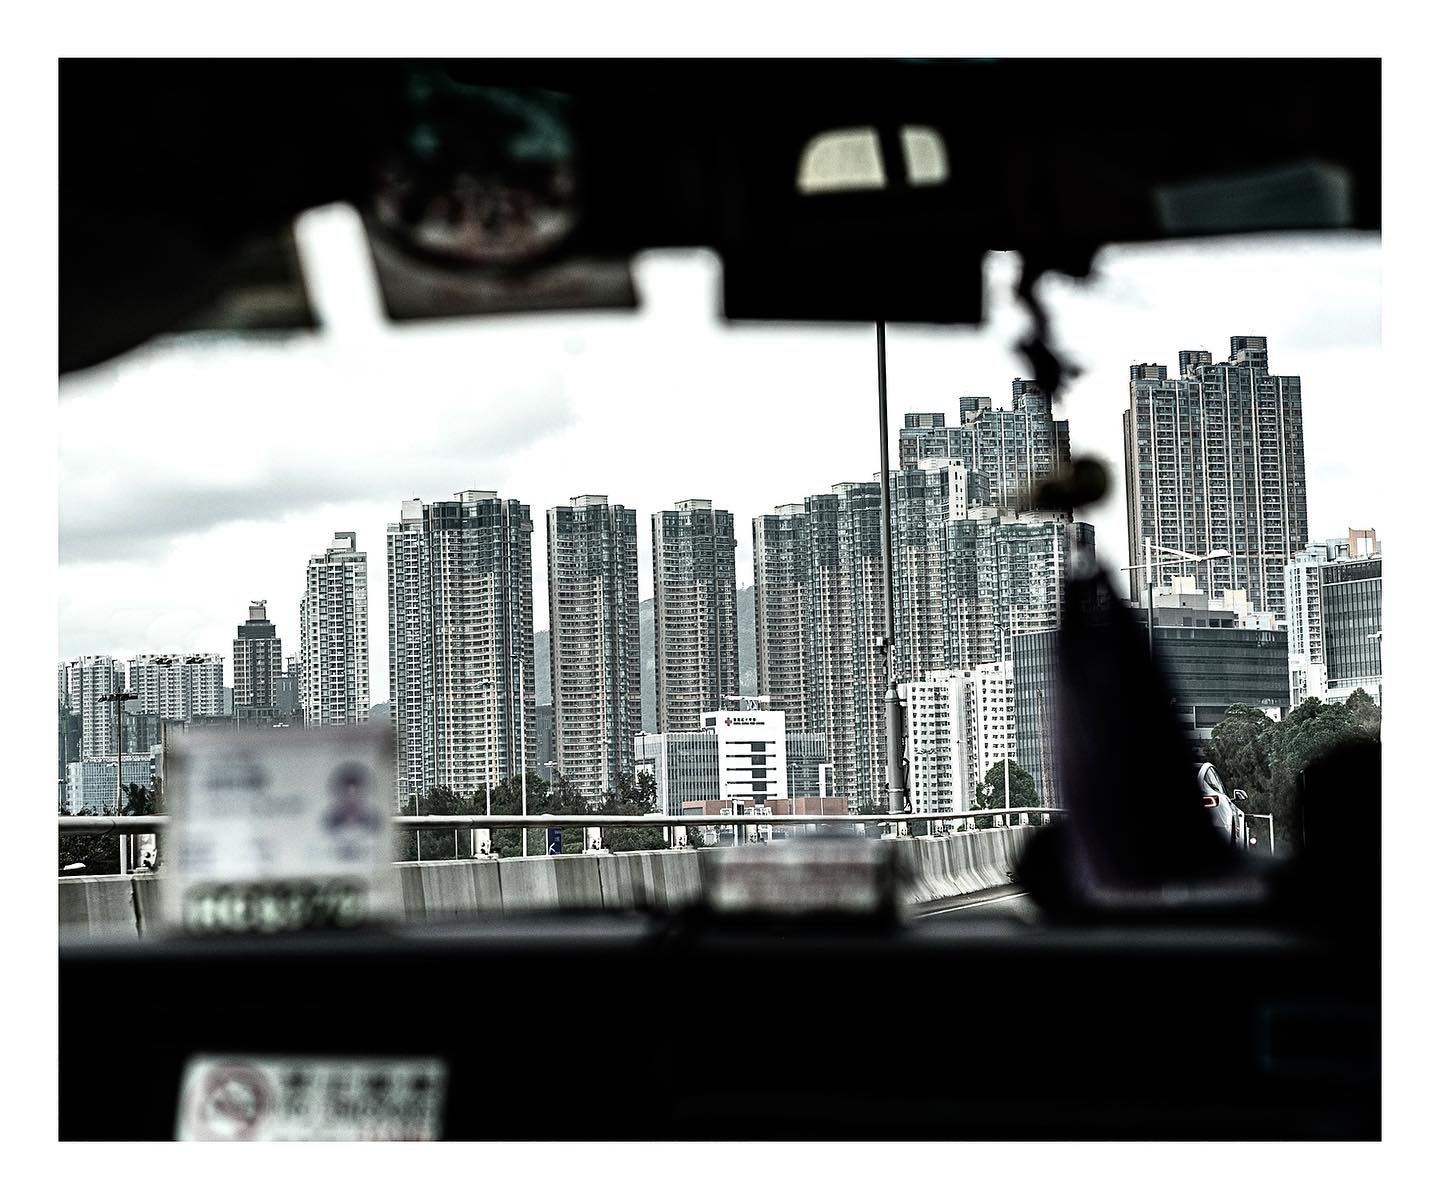 Hong Kong, Mar 2023
_____________
.
.
.
.
.
_____________
#hongkong #hk